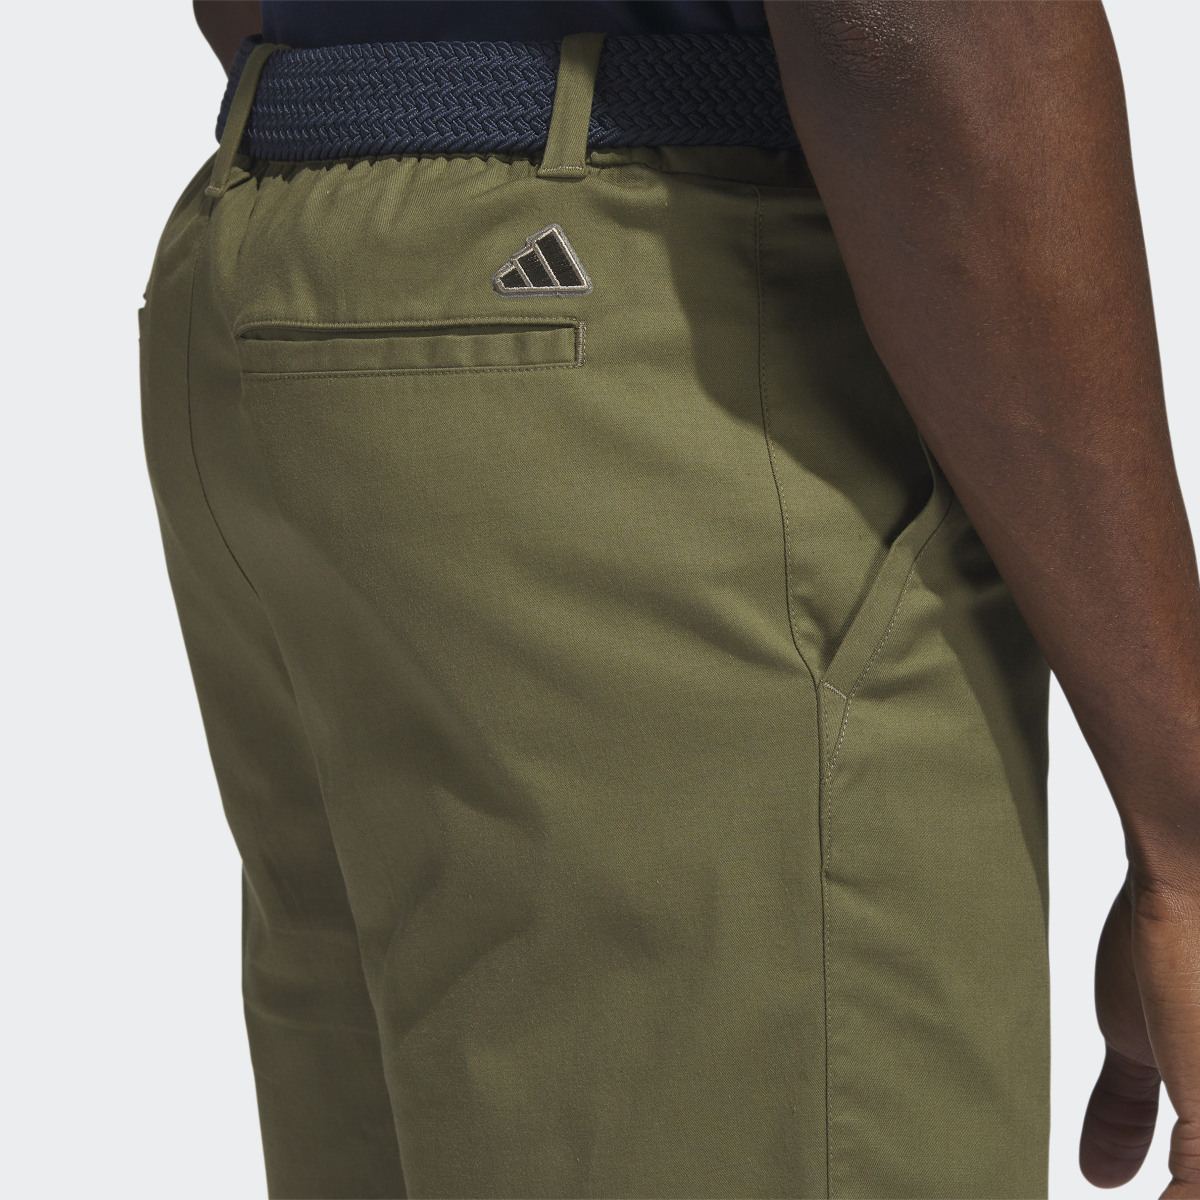 Adidas Go-To 9-Inch Golf Shorts. 6